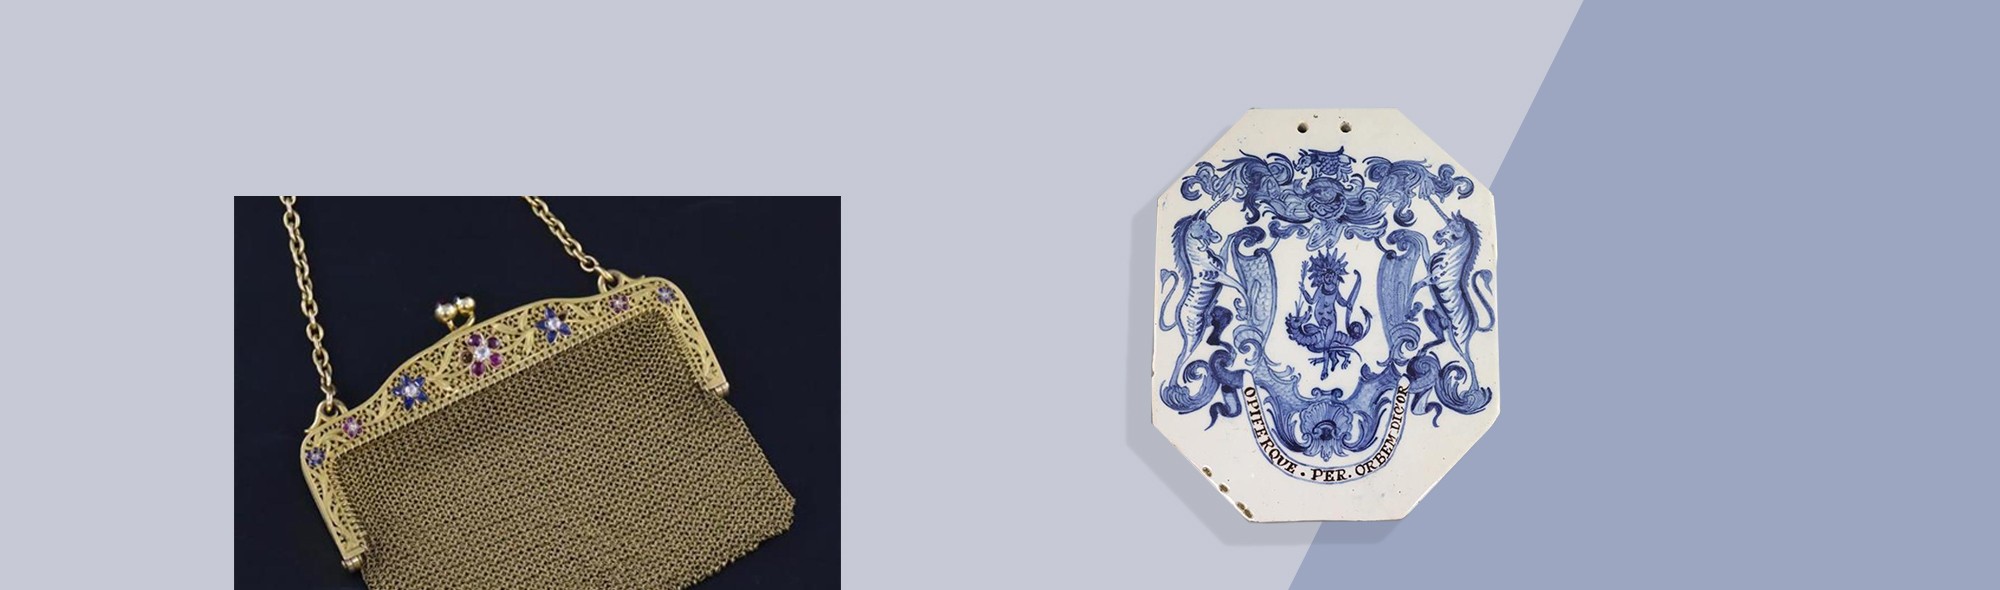 gold purse and ceramic plaque